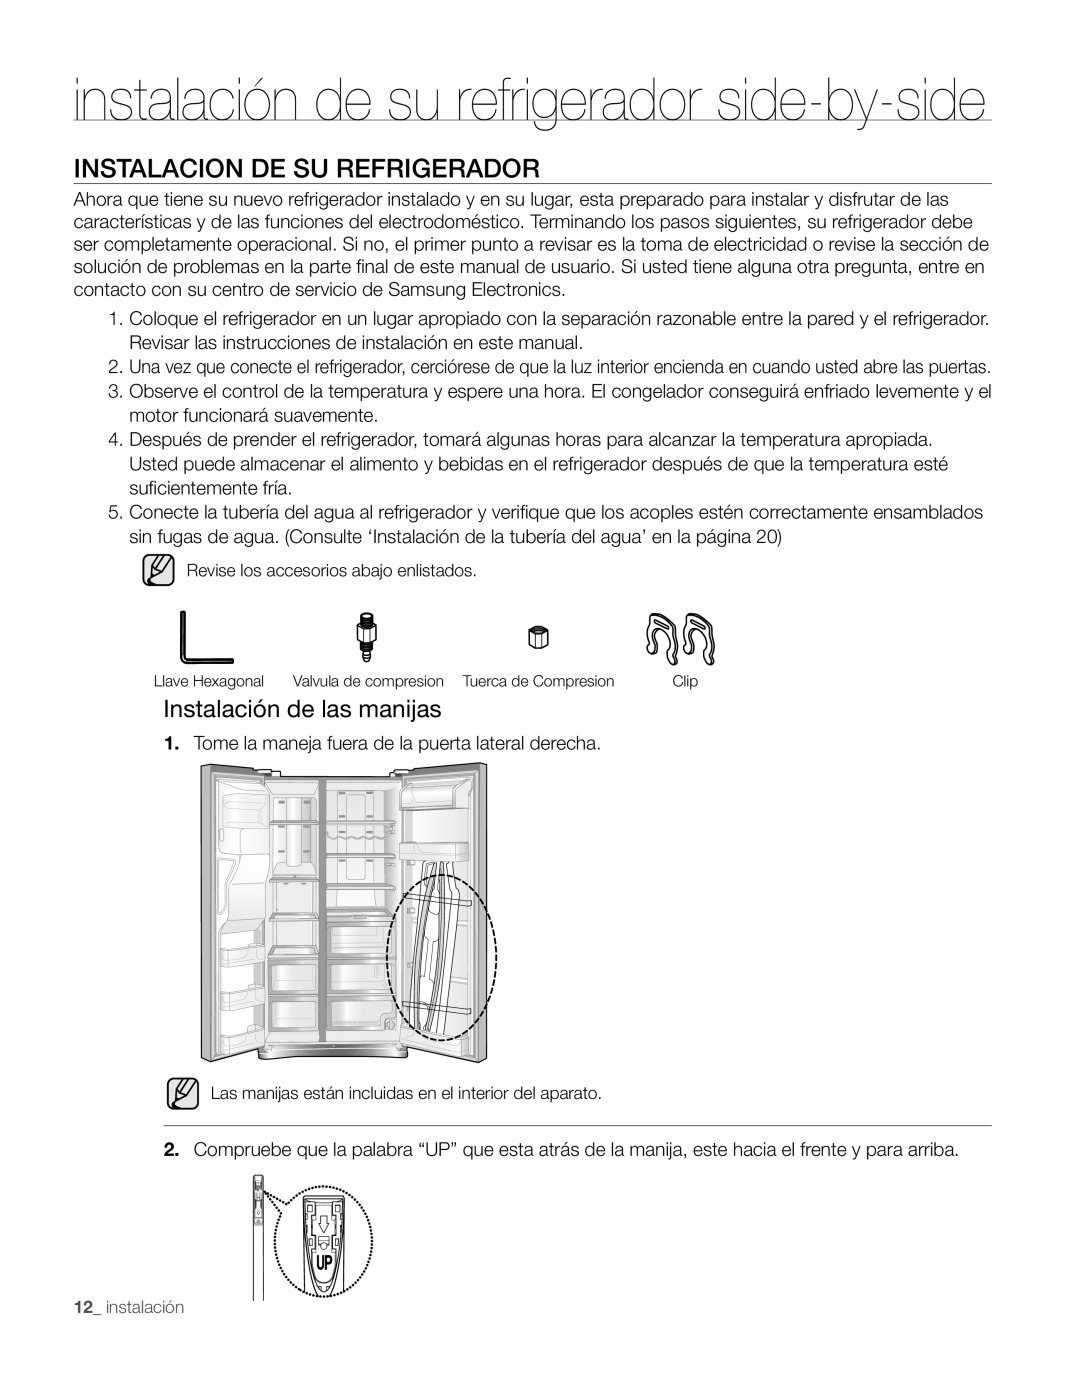 Samsung RS267TDPN Instalacion De Su Refrigerador, Instalación de las manijas, instalación de su refrigerador side-by-side 